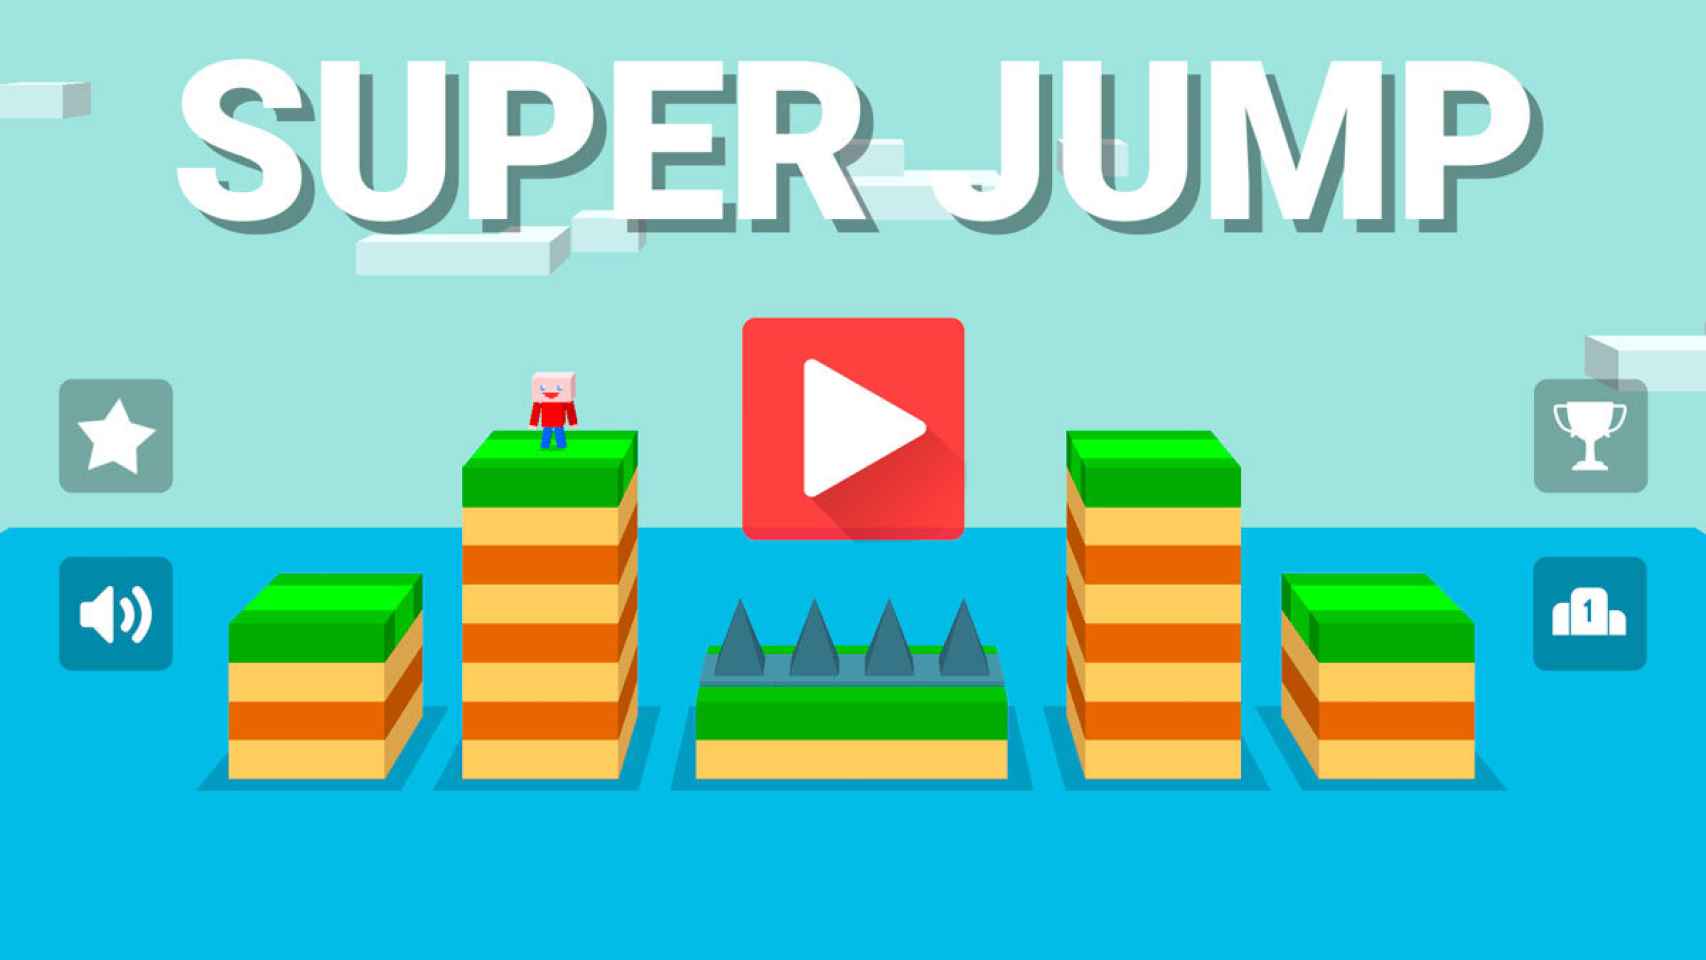 Super Jump: el salto que te volverá loco